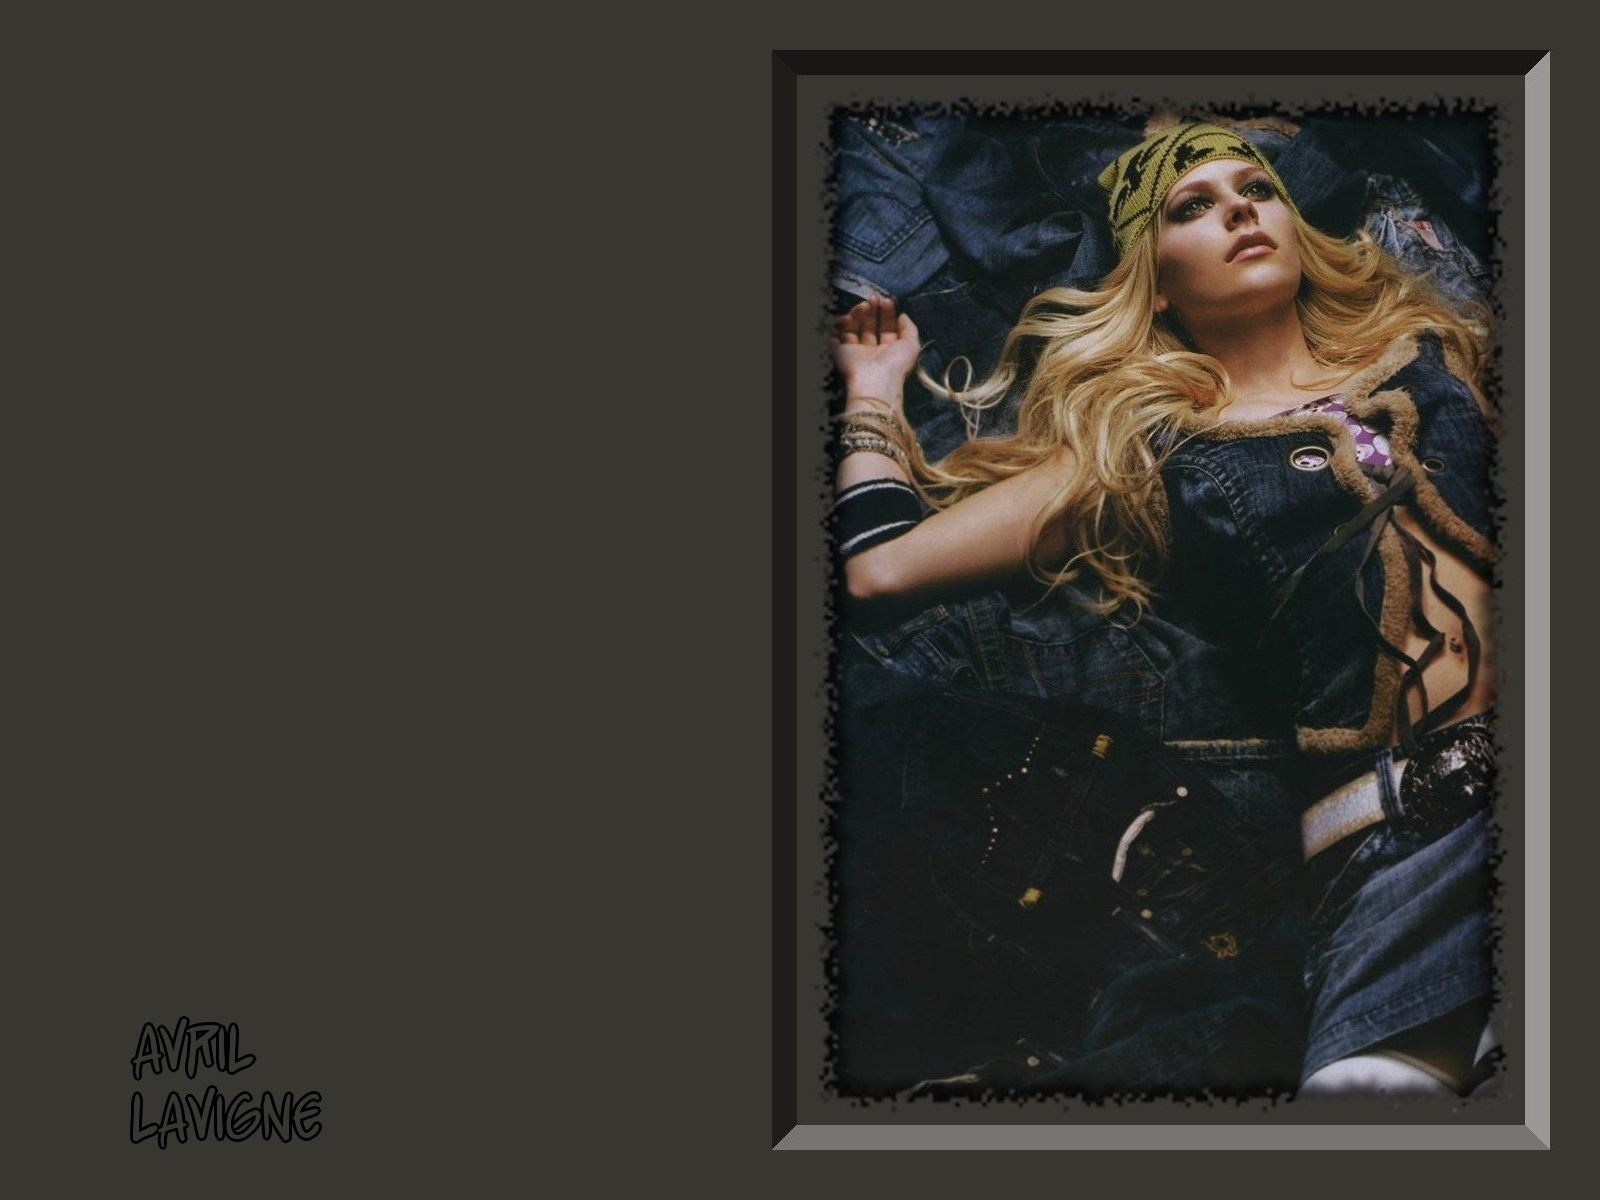 Avril Lavigne 艾薇儿·拉维妮 美女壁纸23 - 1600x1200